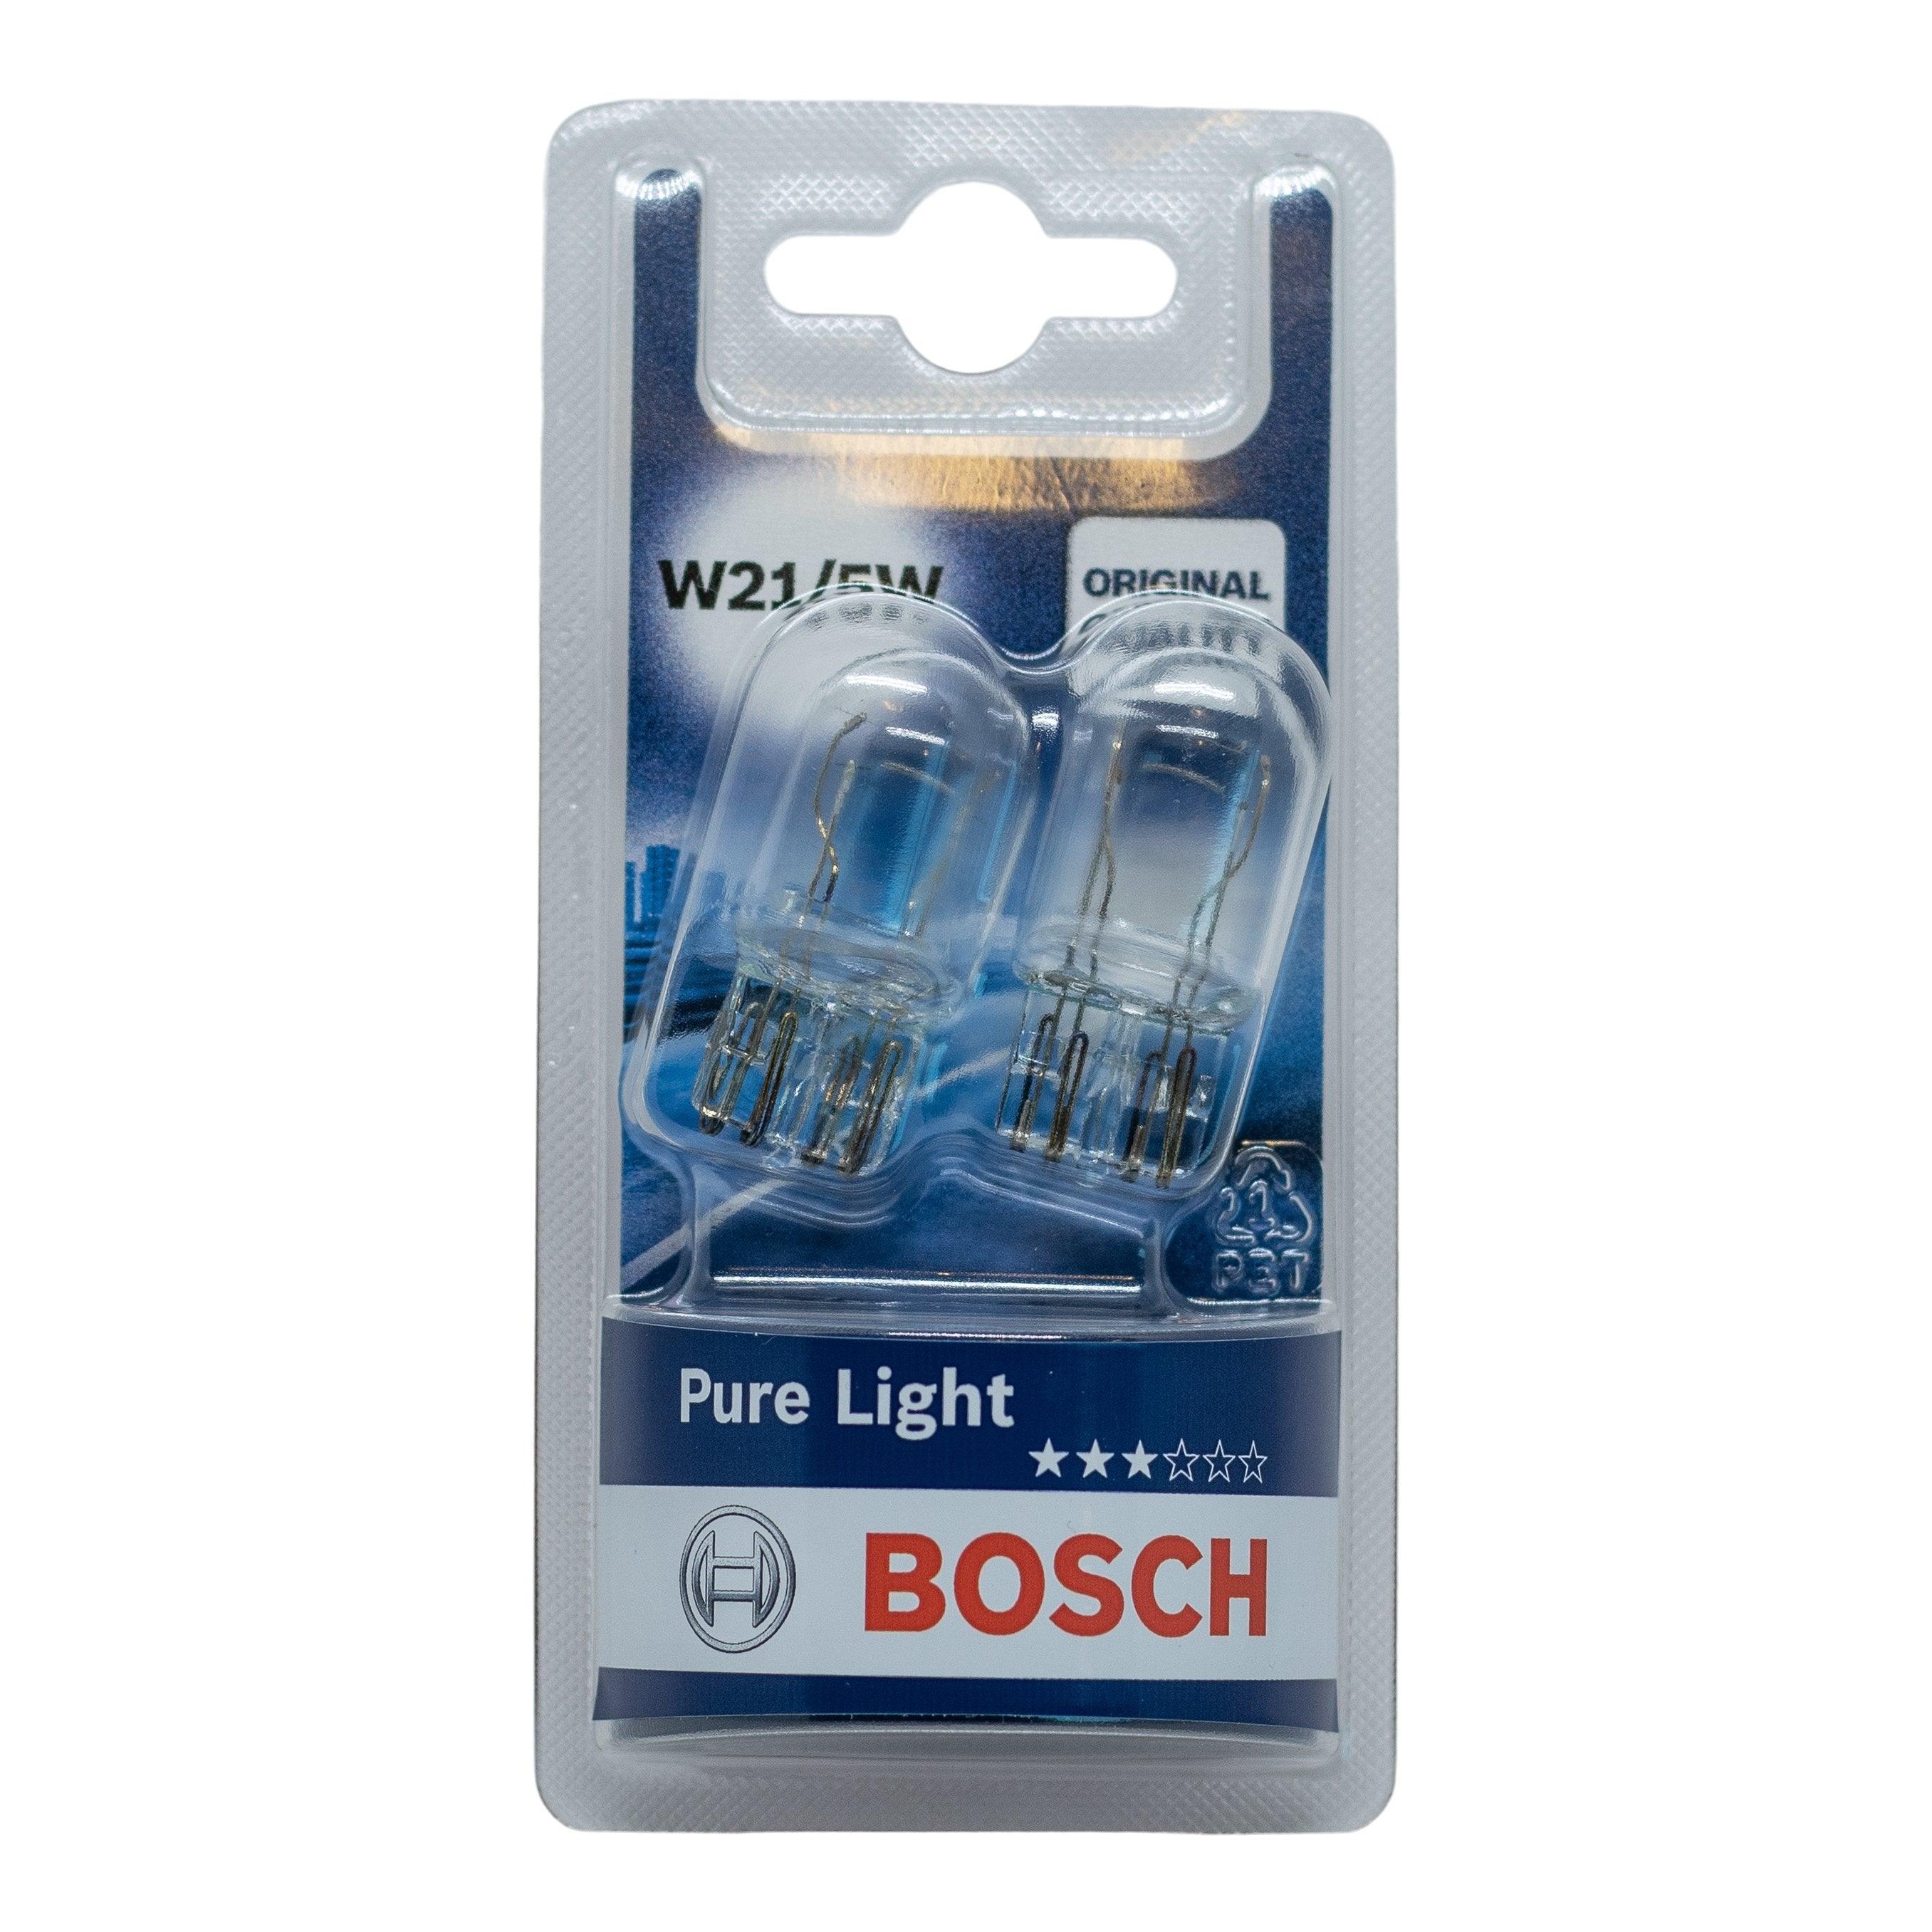 Billede af Bosch Pure Light W21/5W hos XpertCleaning.dk